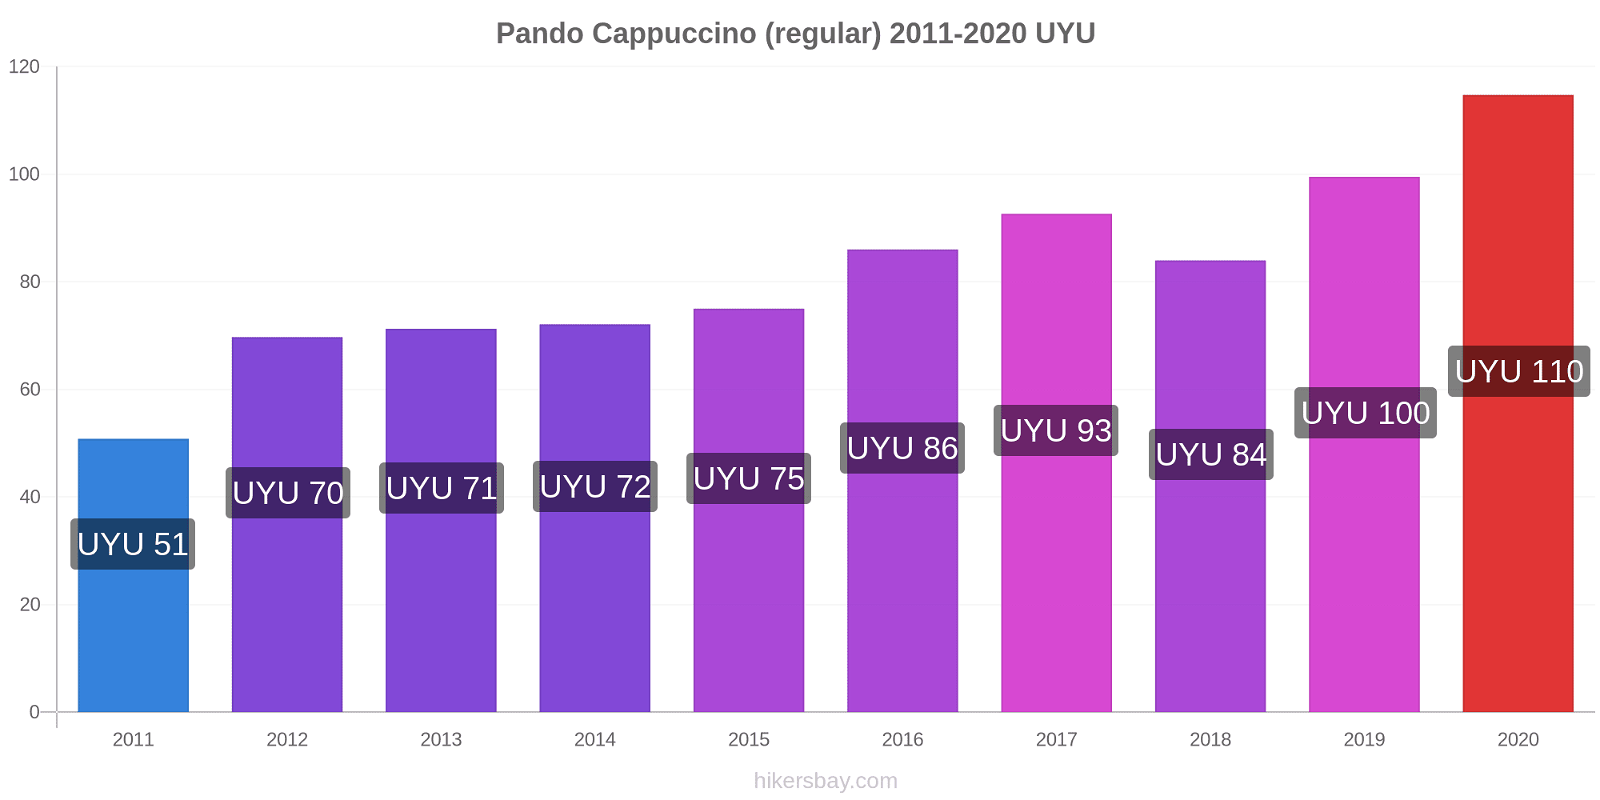 Pando price changes Cappuccino (regular) hikersbay.com